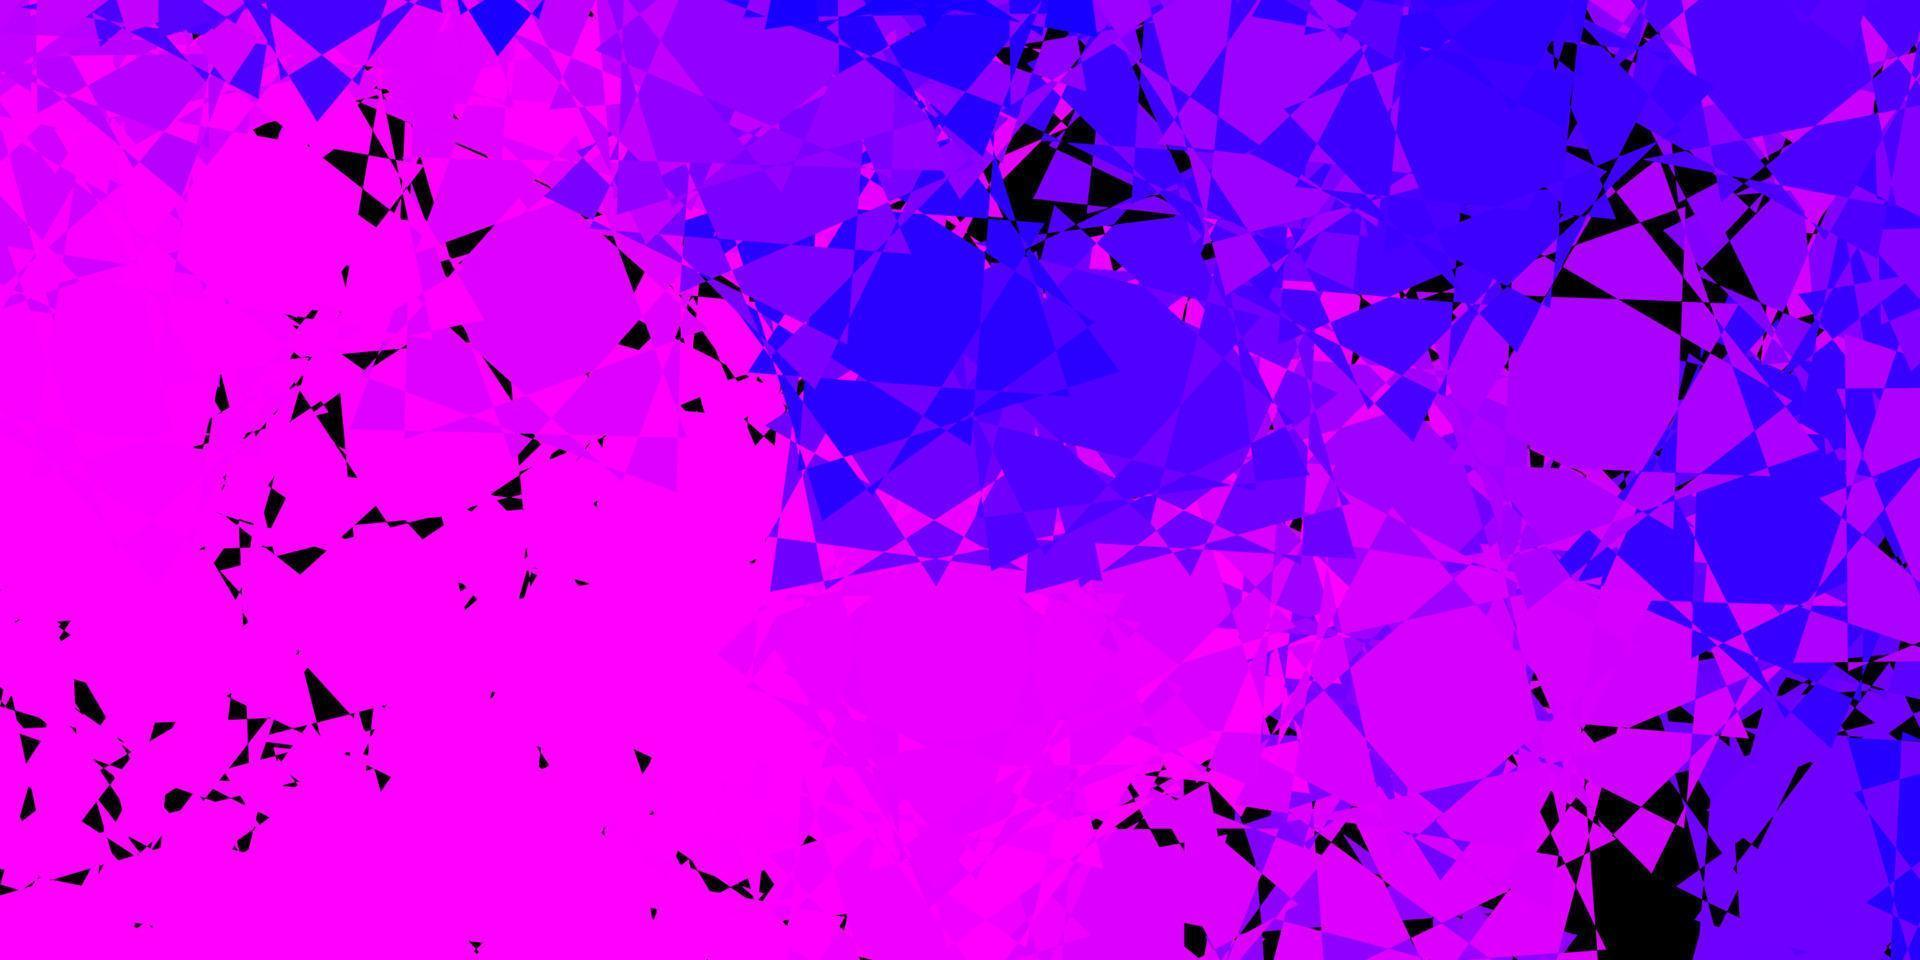 donkerpaars, roze vectormalplaatje met driehoeksvormen. vector